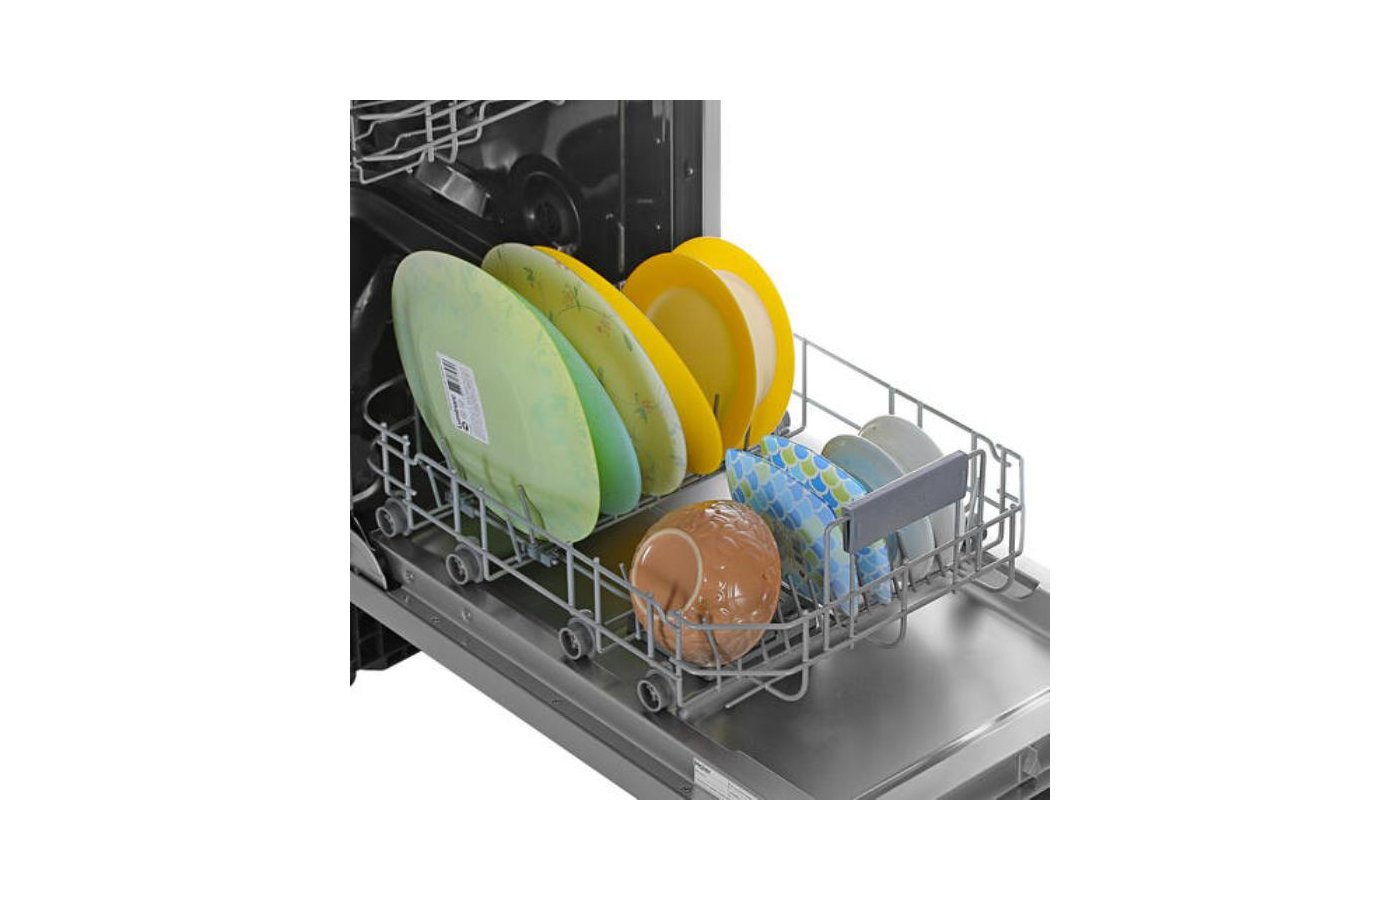 Встраиваемая посудомоечная машина Haier hdwe11-194ru. Встраиваемая посудомоечная машина 45 см Haier hdwe11-194ru. Посудомоечная машина Haier hdwe11-194ru схема встраивания. Встраиваемая посудомоечная машина 45 см Haier hdwe11-194ru характеристики.